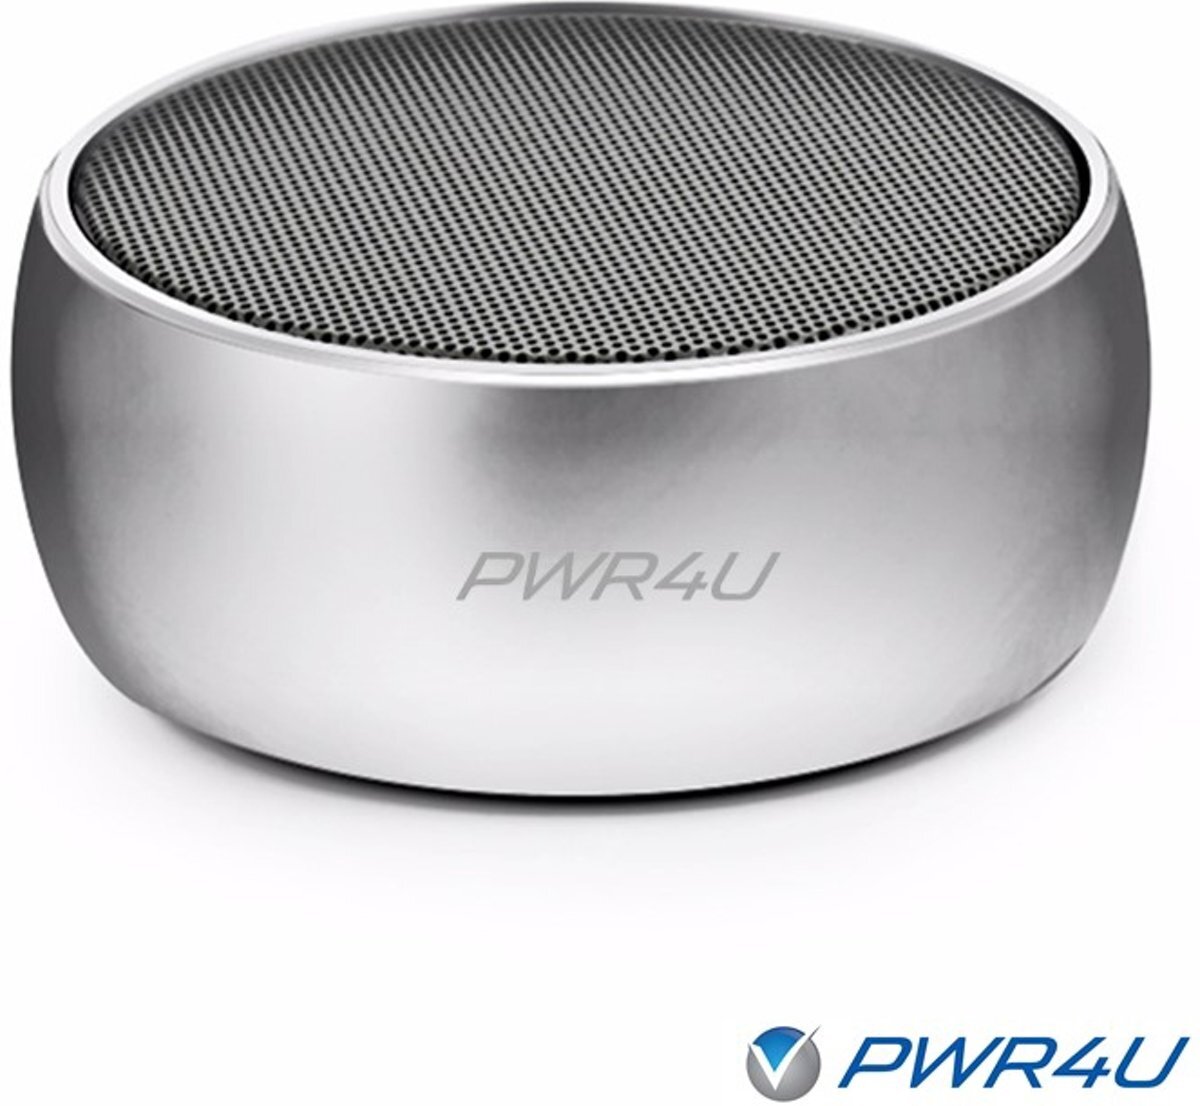 PWR4U Krachtige draadloze Bluetooth speaker met de mogelijkheid handsfree te bellen. De accu werkt langere tijd. De Silver Edition is geschikt voor alle Bluetooth toestellen, waaronder Samsung, iPhone modellen zilver